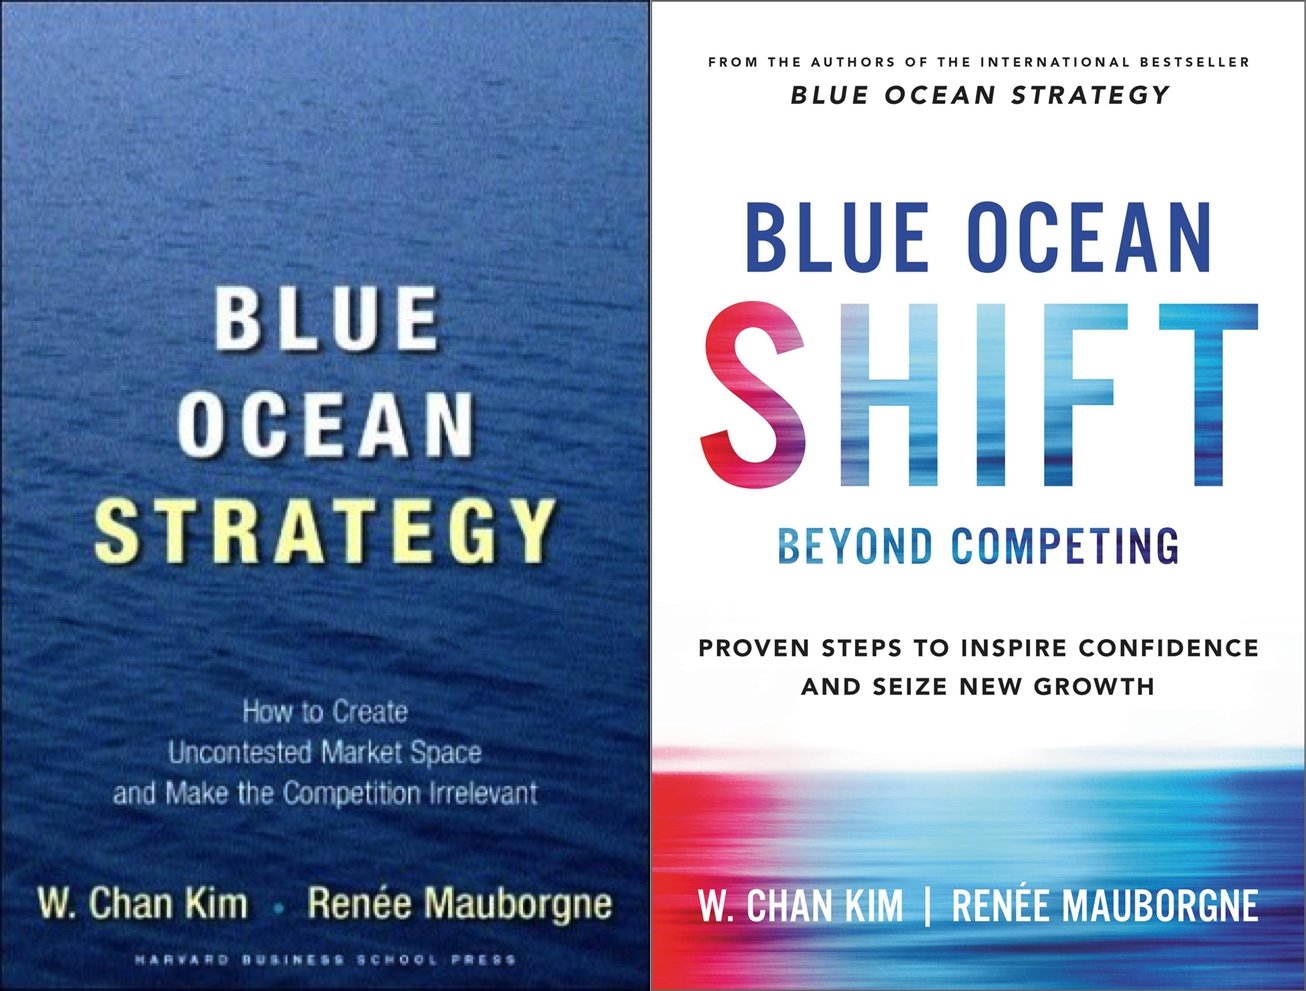 《Blue Ocean Shift》为《蓝海策略》续集，介绍不同行业与组织的领导者如何透过本书介绍的流程与方式来转变和创造新的市场。